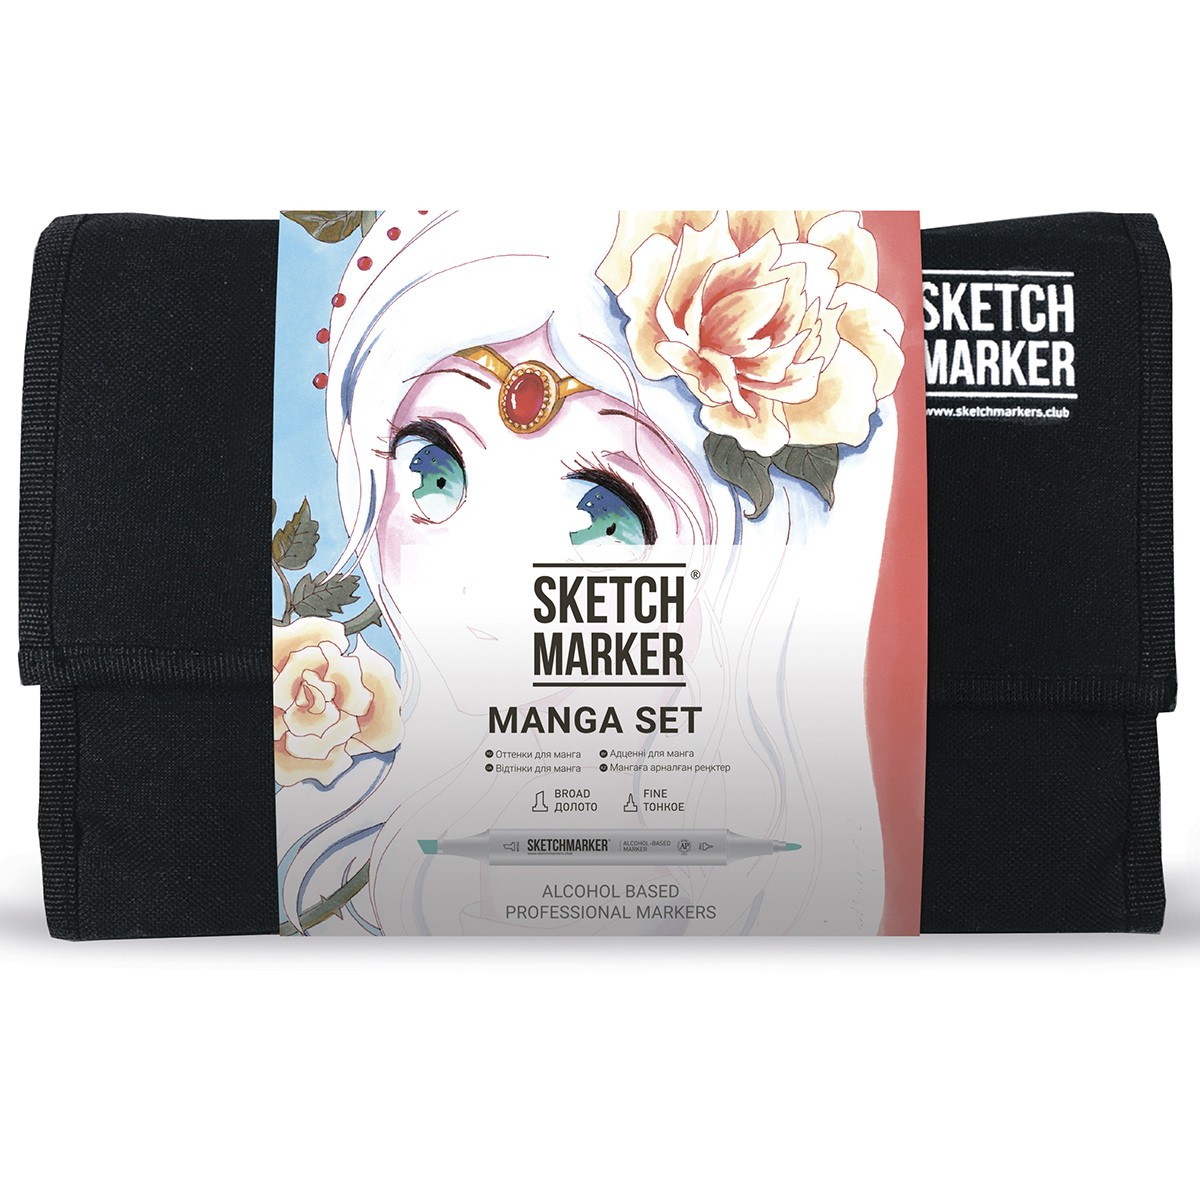 Набор маркеров Sketchmarker Manga set 24 Манга набор (24 маркера + сумка органайзер) манга в японии и россии выпуск 2